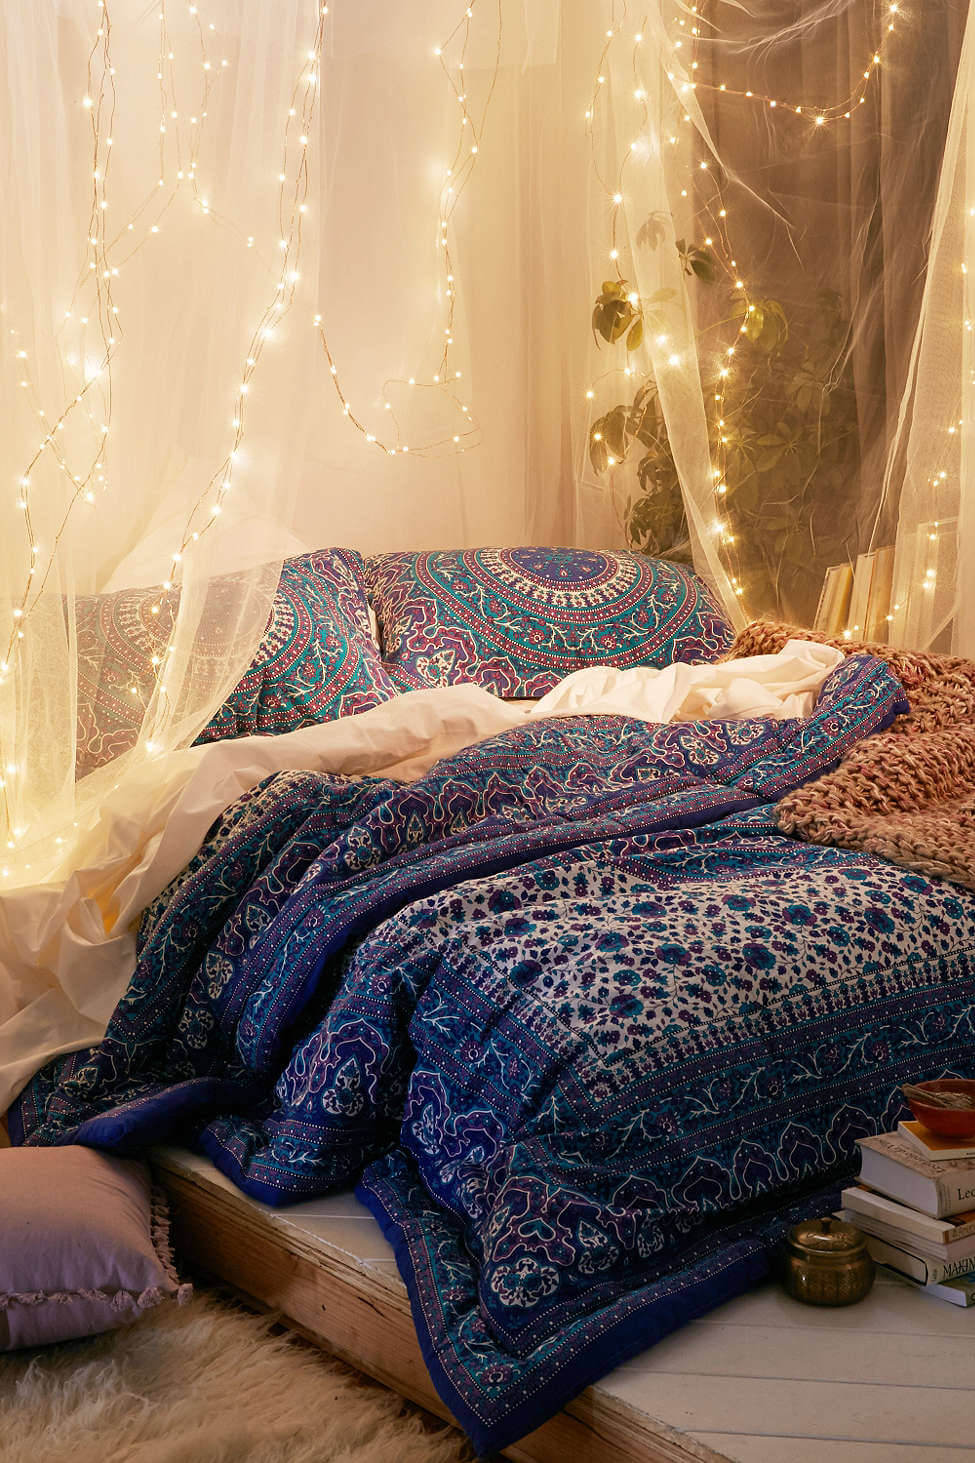 sheer-curtains-string-lights-bohemian-bedroom-dorm-room-ideas-nordroom